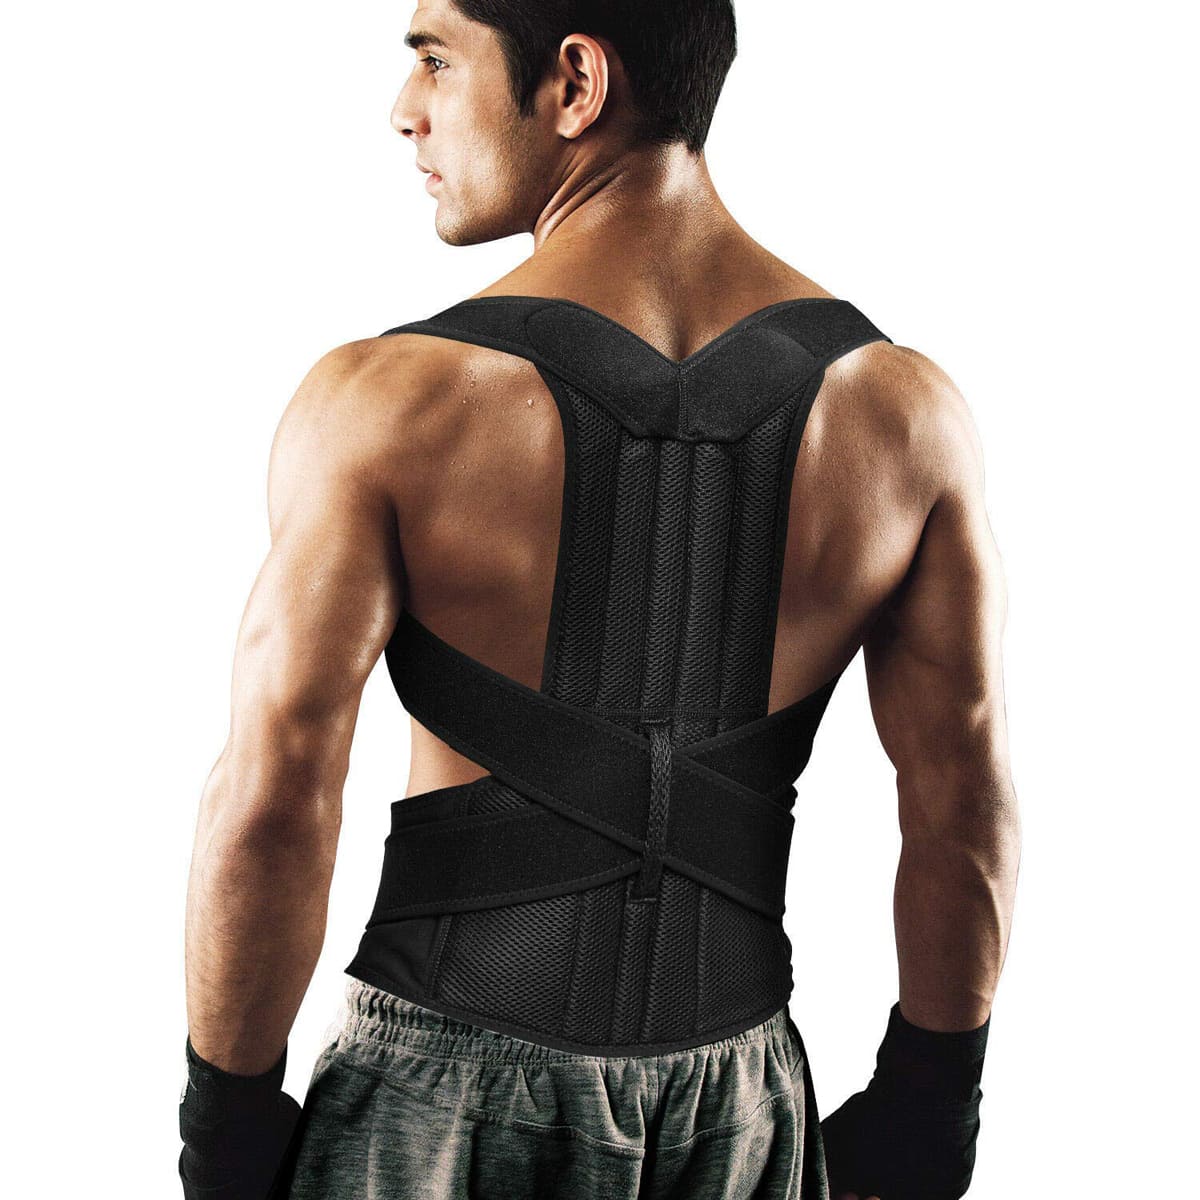 BackEmbrace Back Support Posture Corrector for Women & Men - Made in USA,  Slim & Adjustable Shoulder Brace/Back Brace for Back Pain Relief,  Alleviates